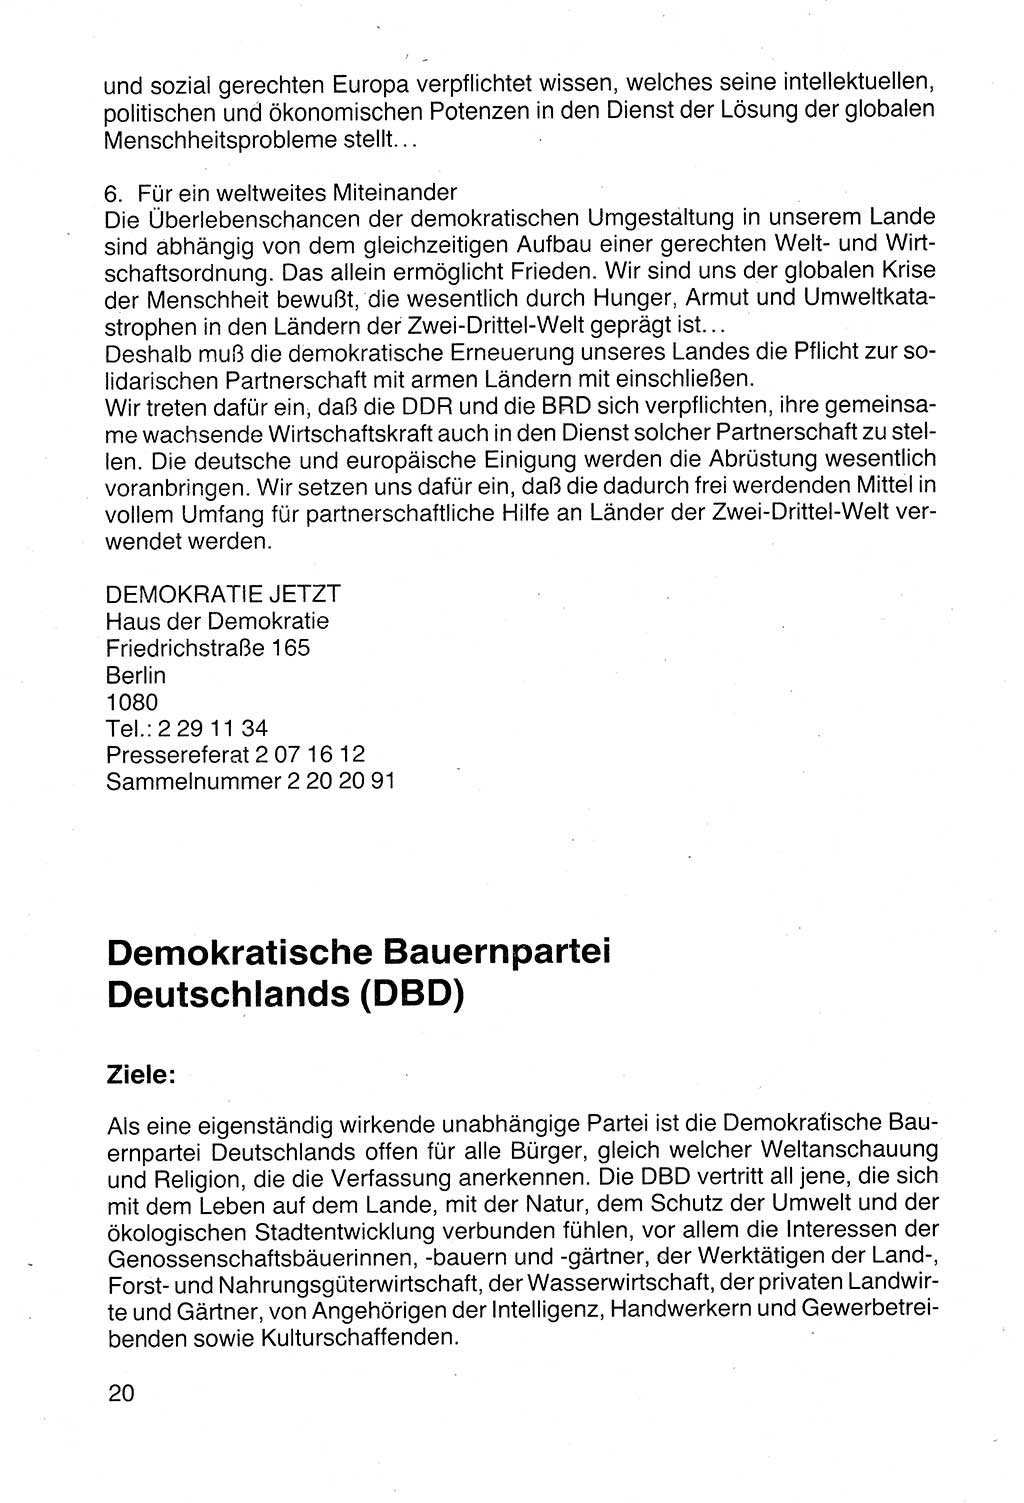 Politische Parteien und Bewegungen der DDR (Deutsche Demokratische Republik) über sich selbst 1990, Seite 20 (Pol. Part. Bew. DDR 1990, S. 20)